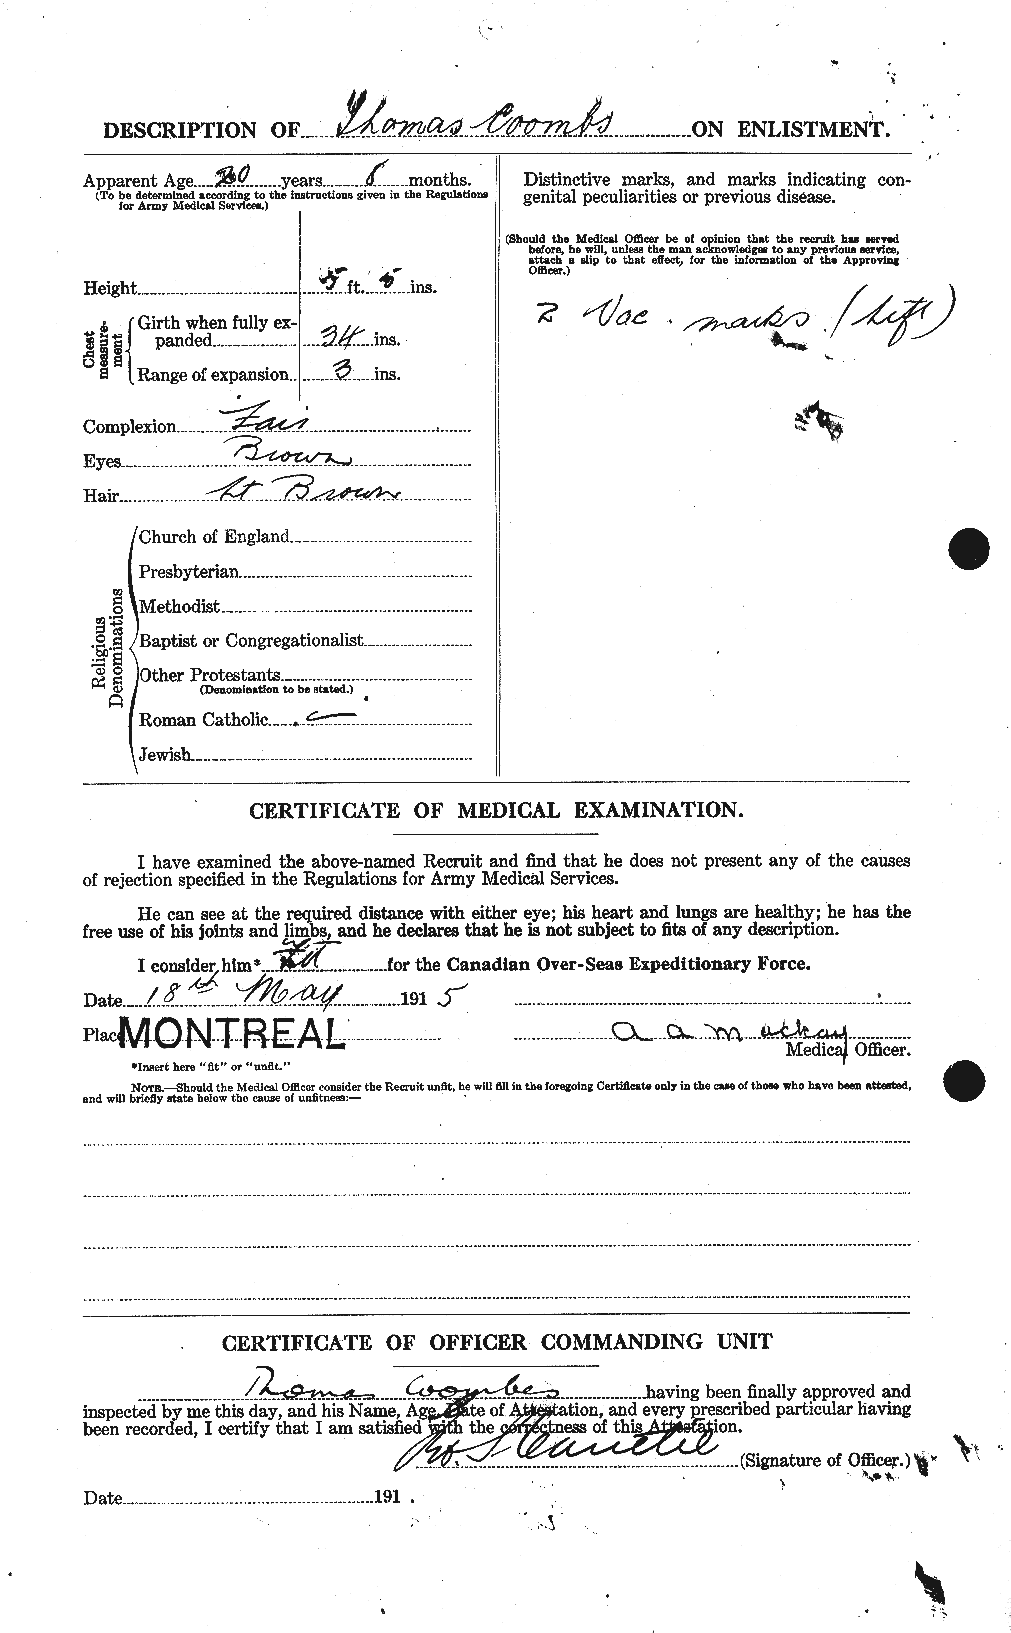 Dossiers du Personnel de la Première Guerre mondiale - CEC 055501b